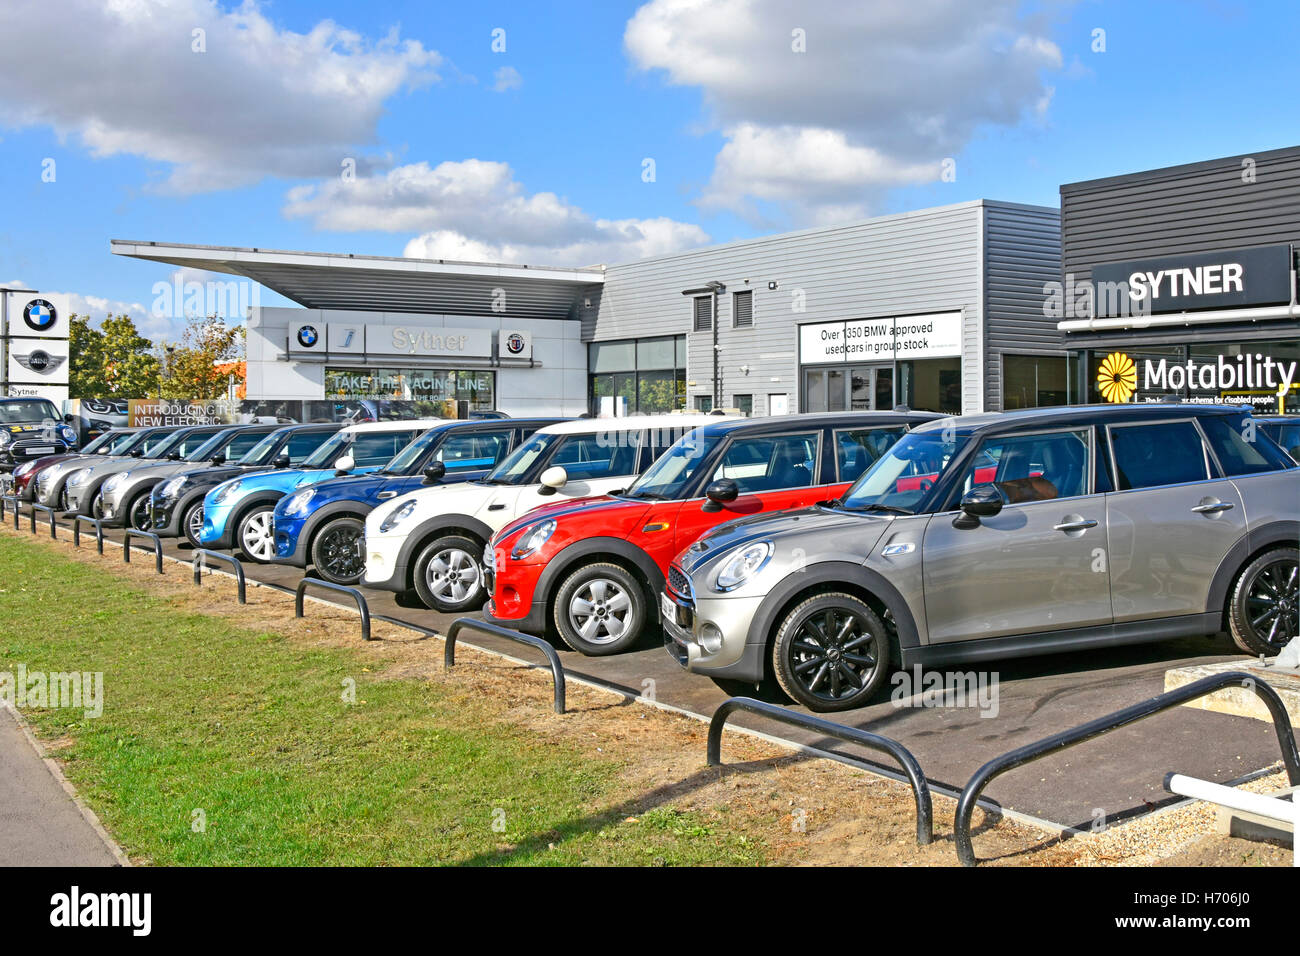 Rangée de mini-voitures BMW d'occasion à vendre sur le site des concessionnaires devant la salle d'exposition de la concession de voitures Sytner Motability Londres Angleterre Royaume-Uni Banque D'Images